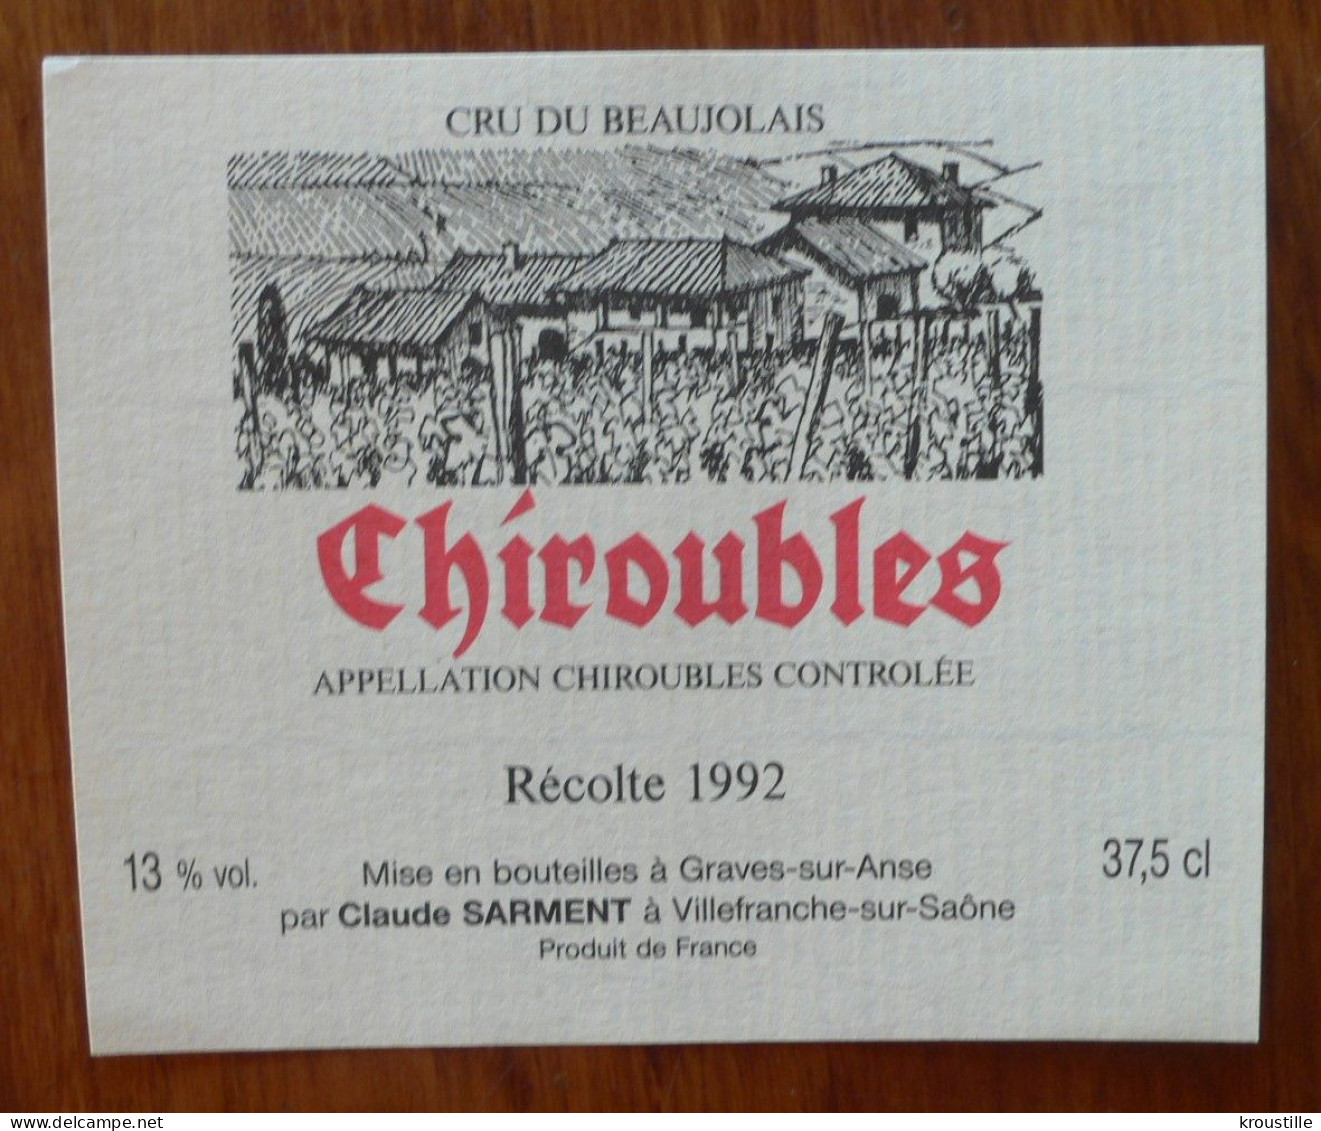 CHIROUBLES RECOLTE 1992 - ETIQUETTE BEAUJOLAIS NEUVE - Beaujolais